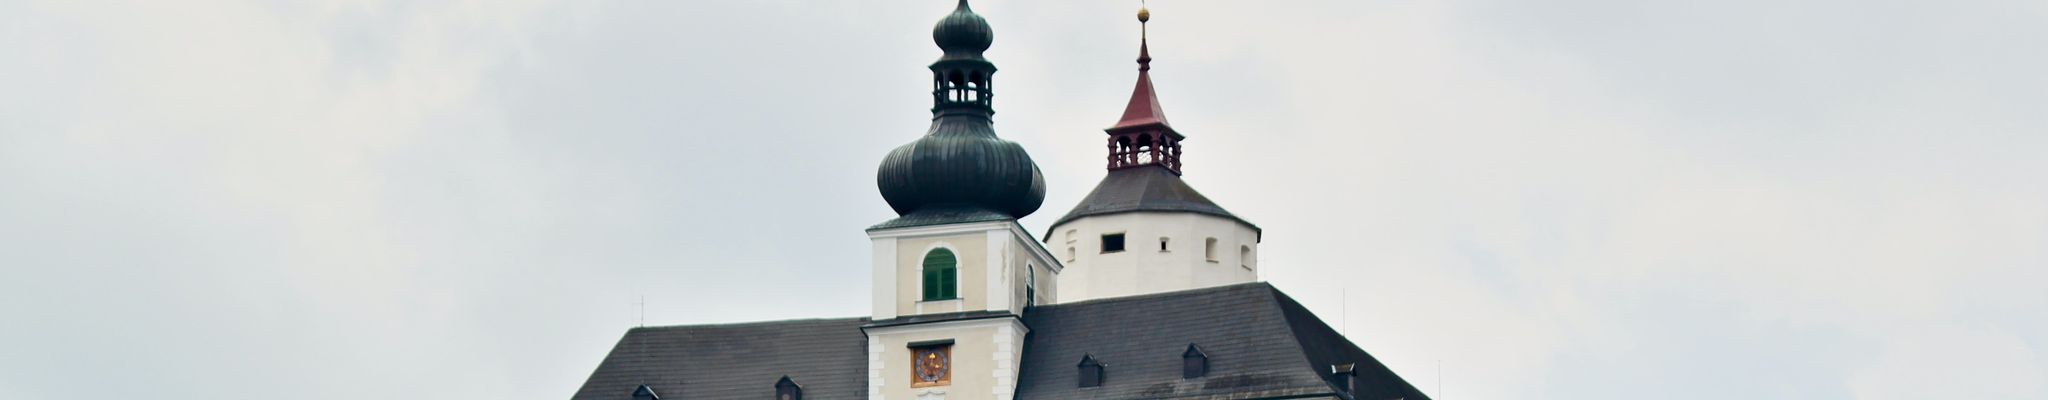 福赫滕斯坦城堡